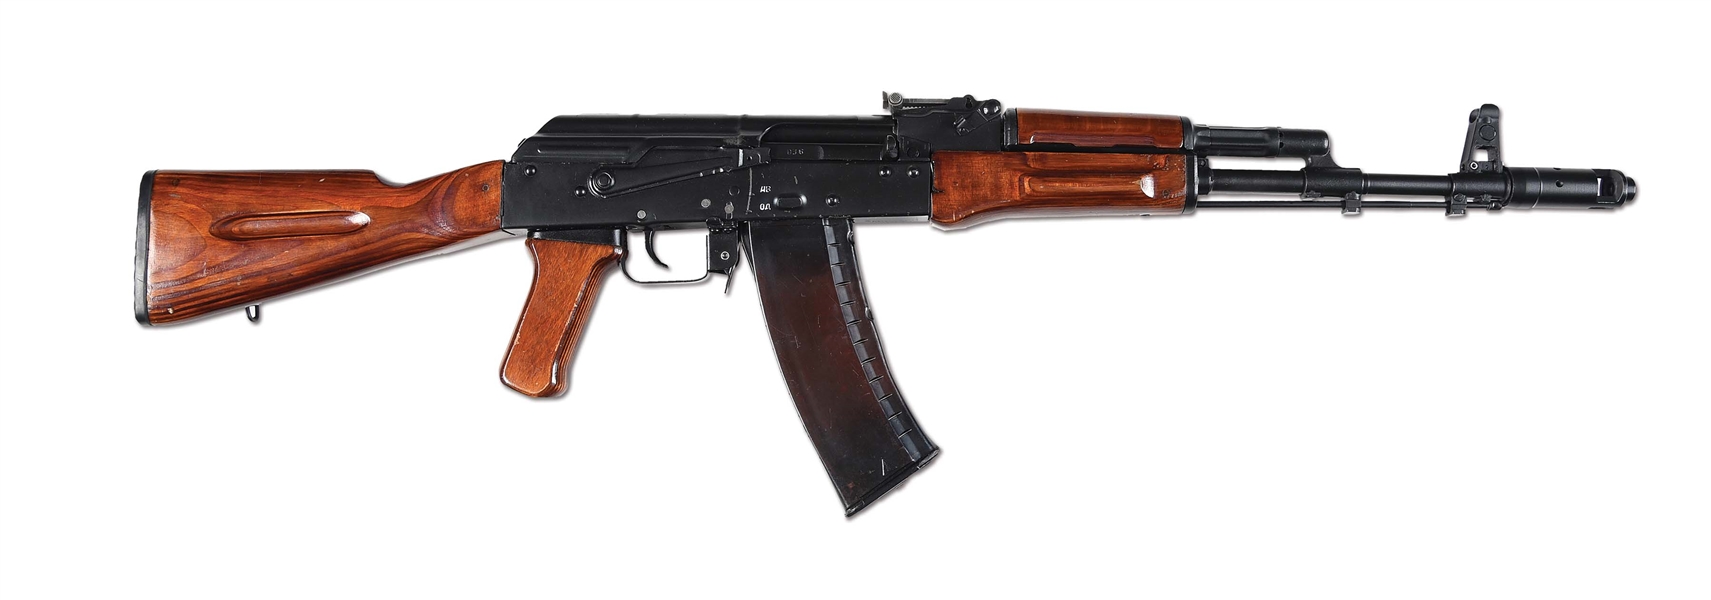 (N) NEAR MINT POLYTECH AK-74 HOST GUN WITH FLEMING FIREARMS AUTO SEAR MACHINE GUN (FULLY TRANSFERABLE).